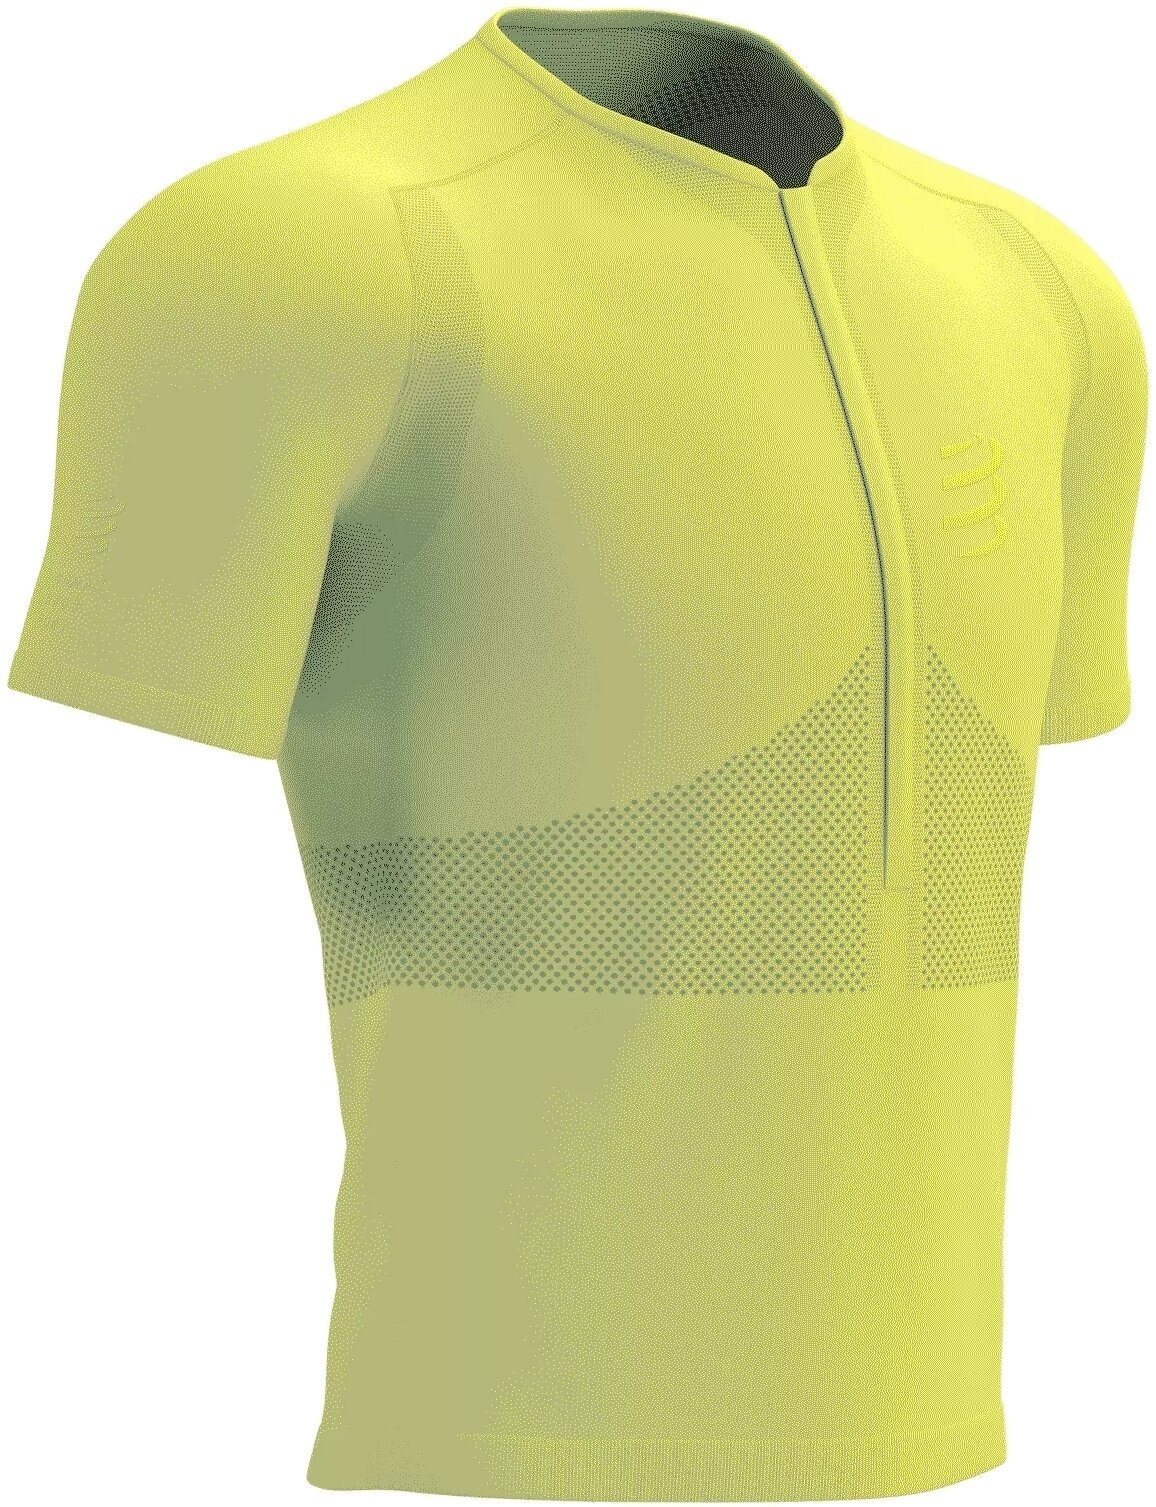 Běžecké tričko s krátkým rukávem
 Compressport Trail Half-Zip Fitted SS Top Green Sheen/Safety Yellow M Běžecké tričko s krátkým rukávem